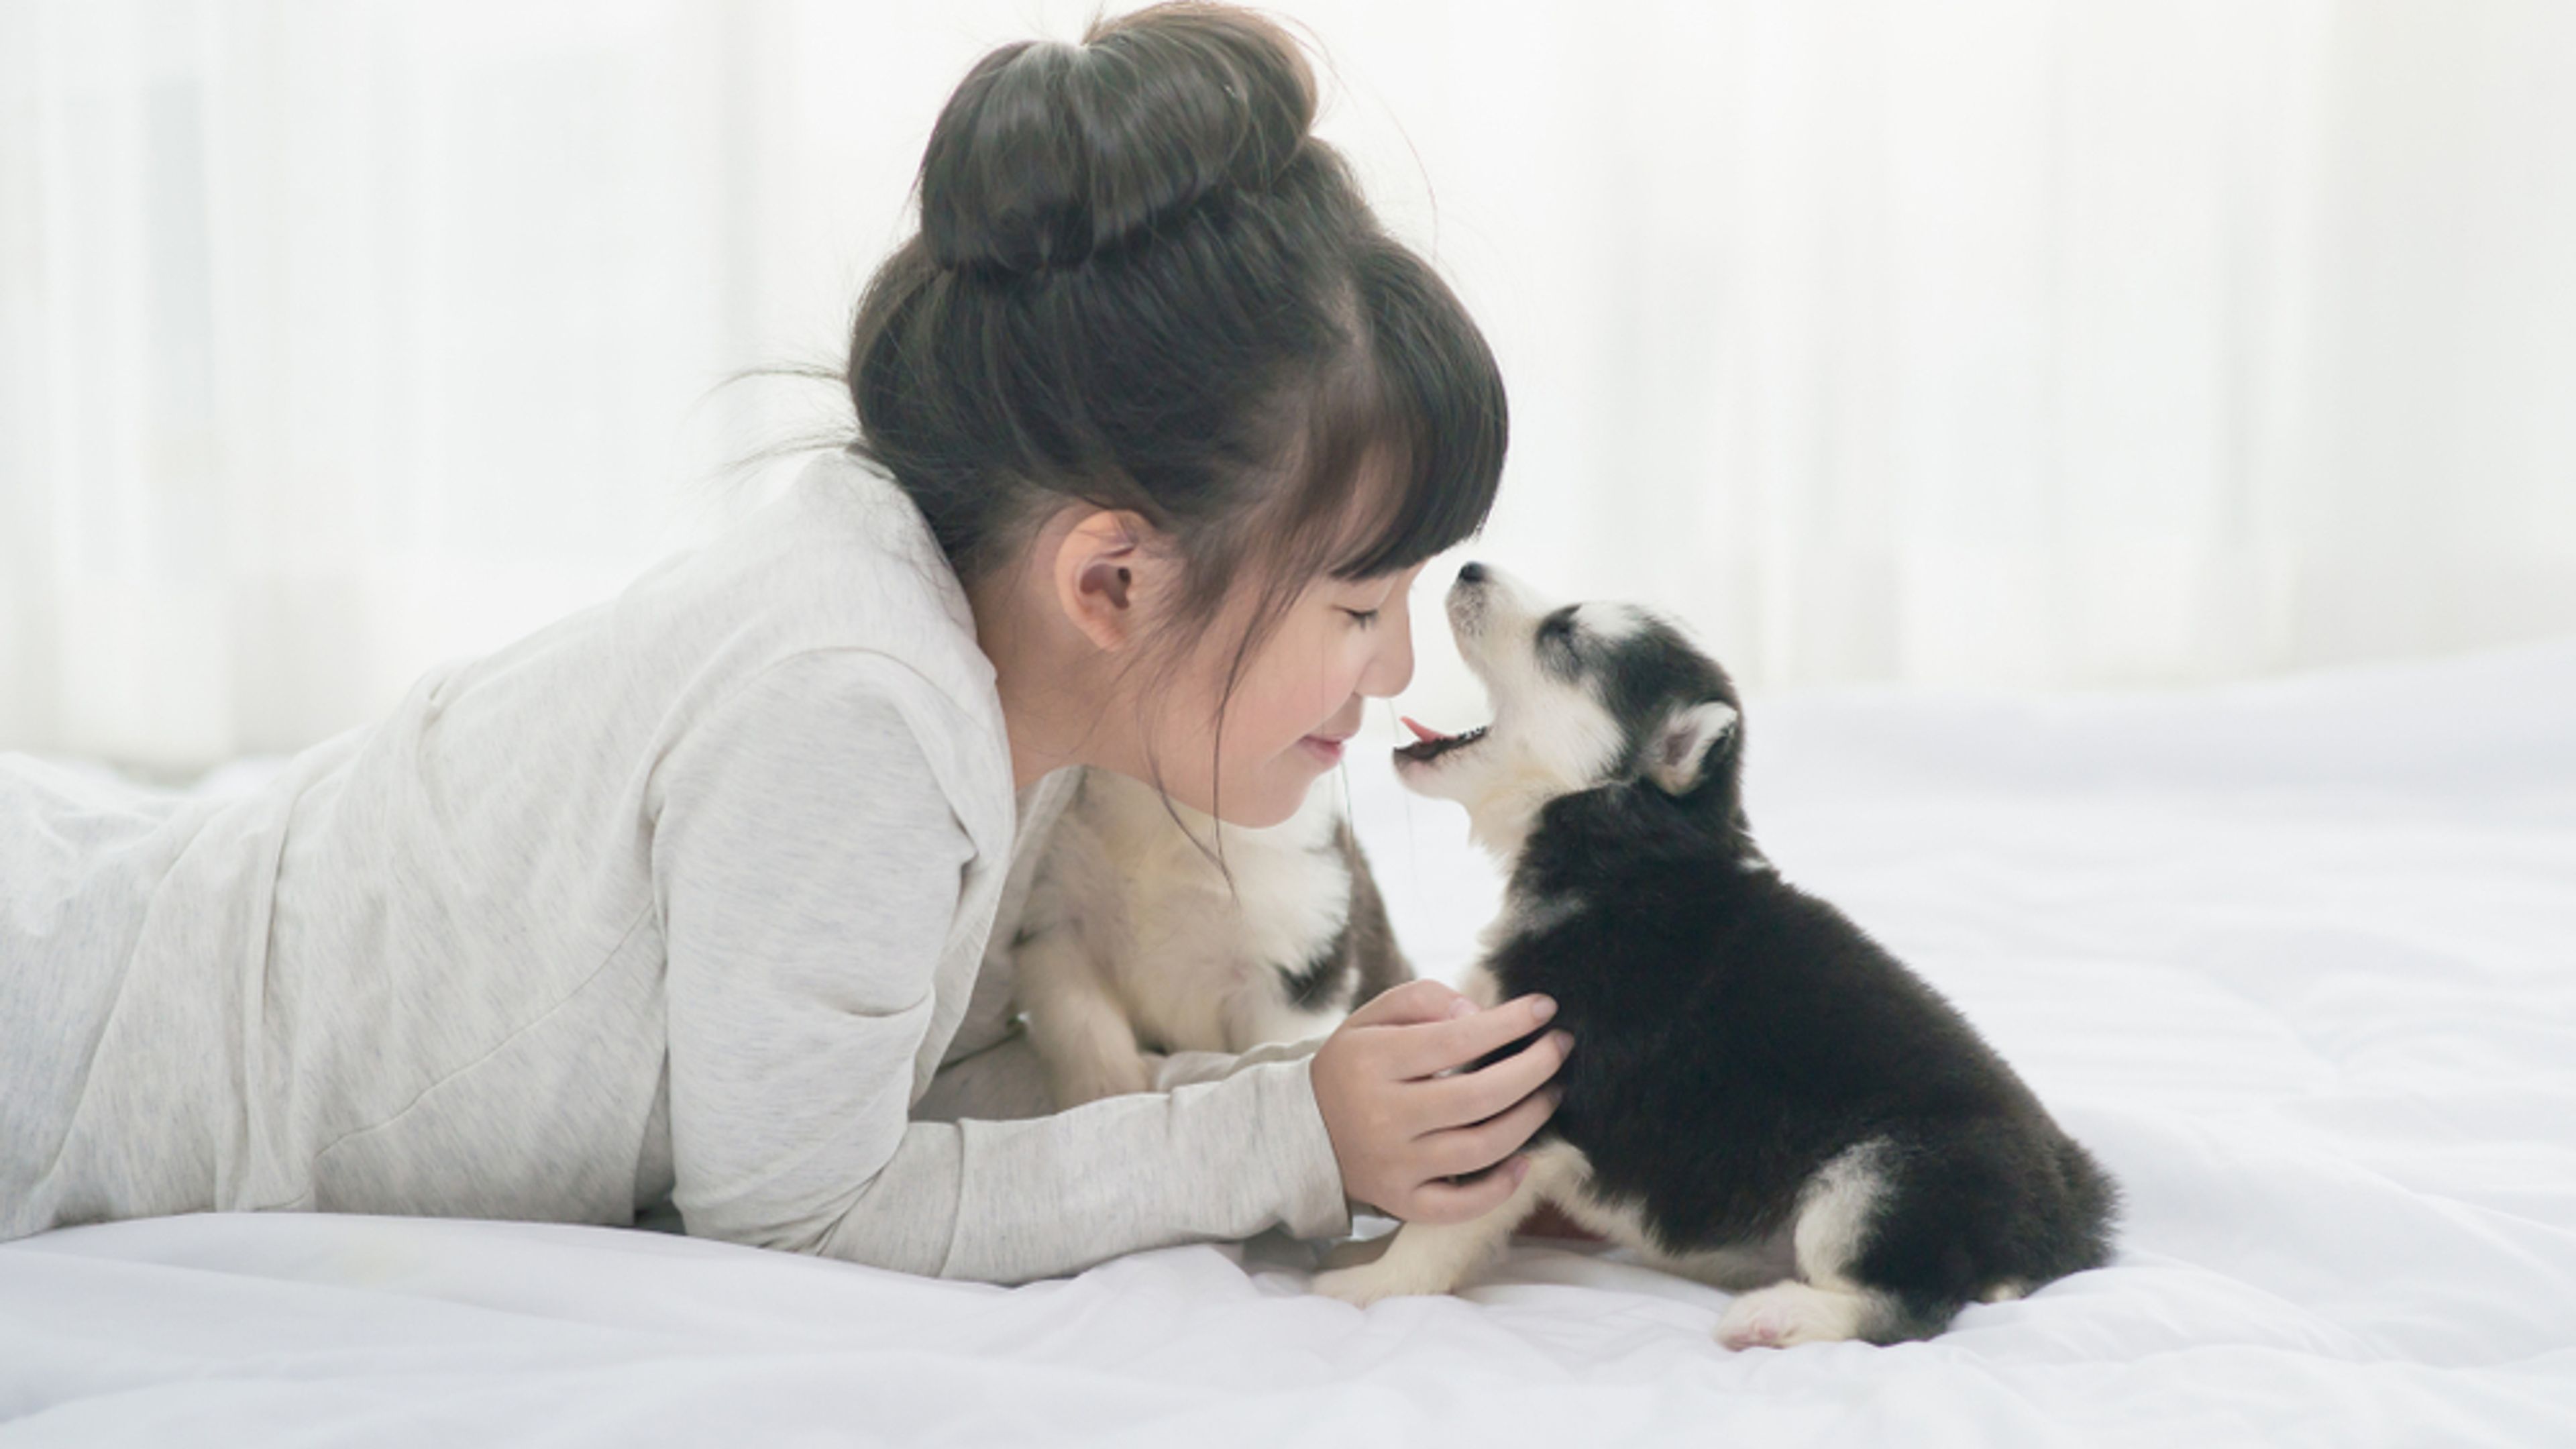 ragazza asiatica sdraiata sul letto con un cucciolo di cane con la bocca spalancata davanti al suo naso